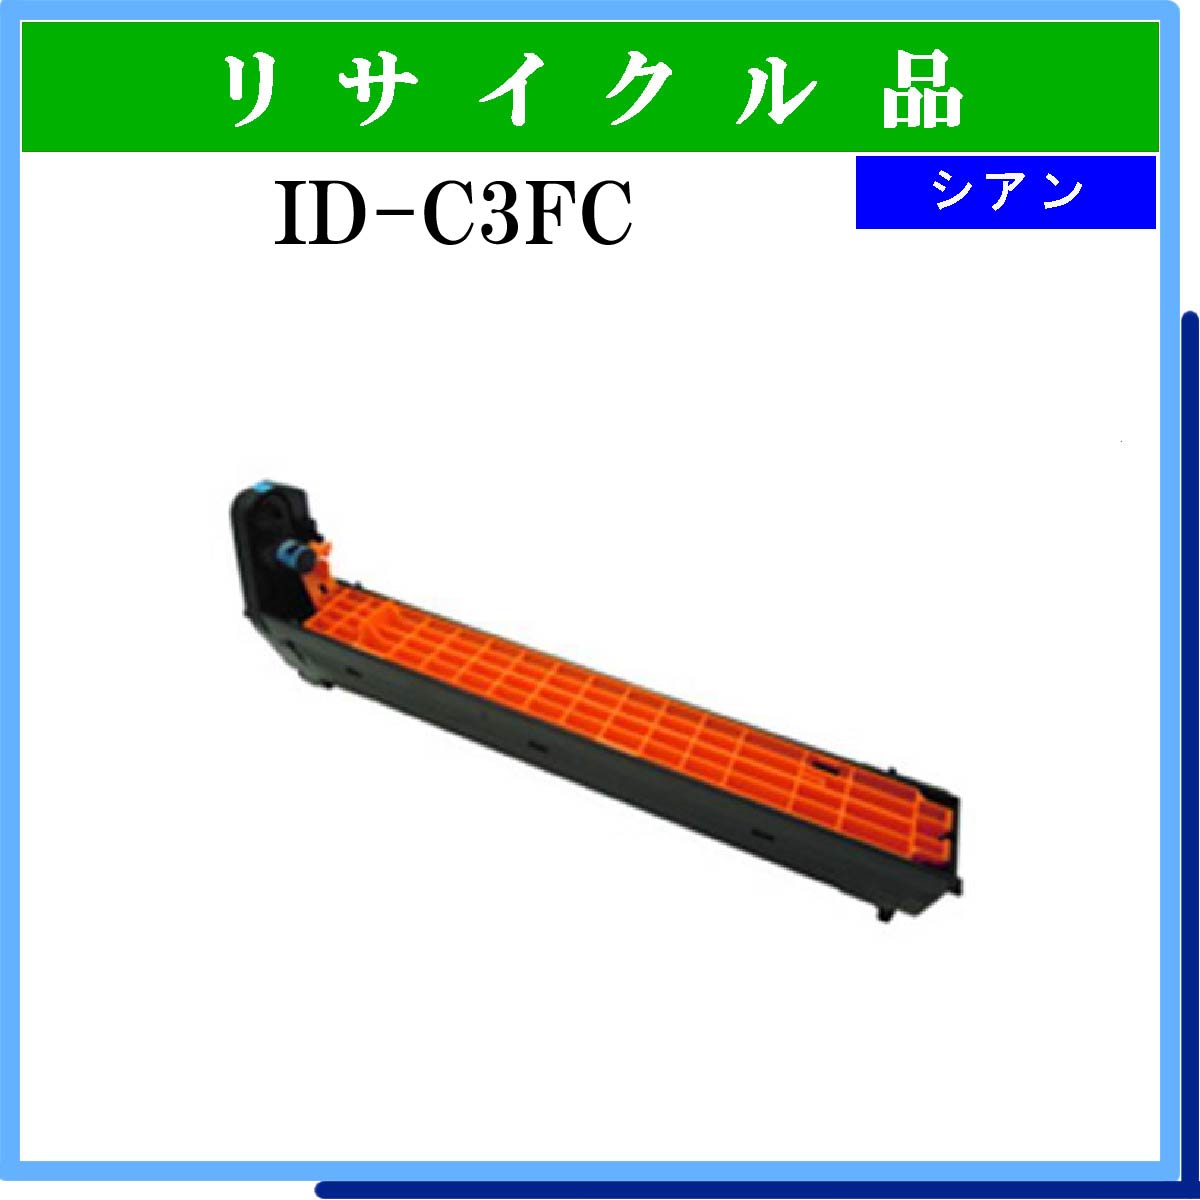 ID-C3FC